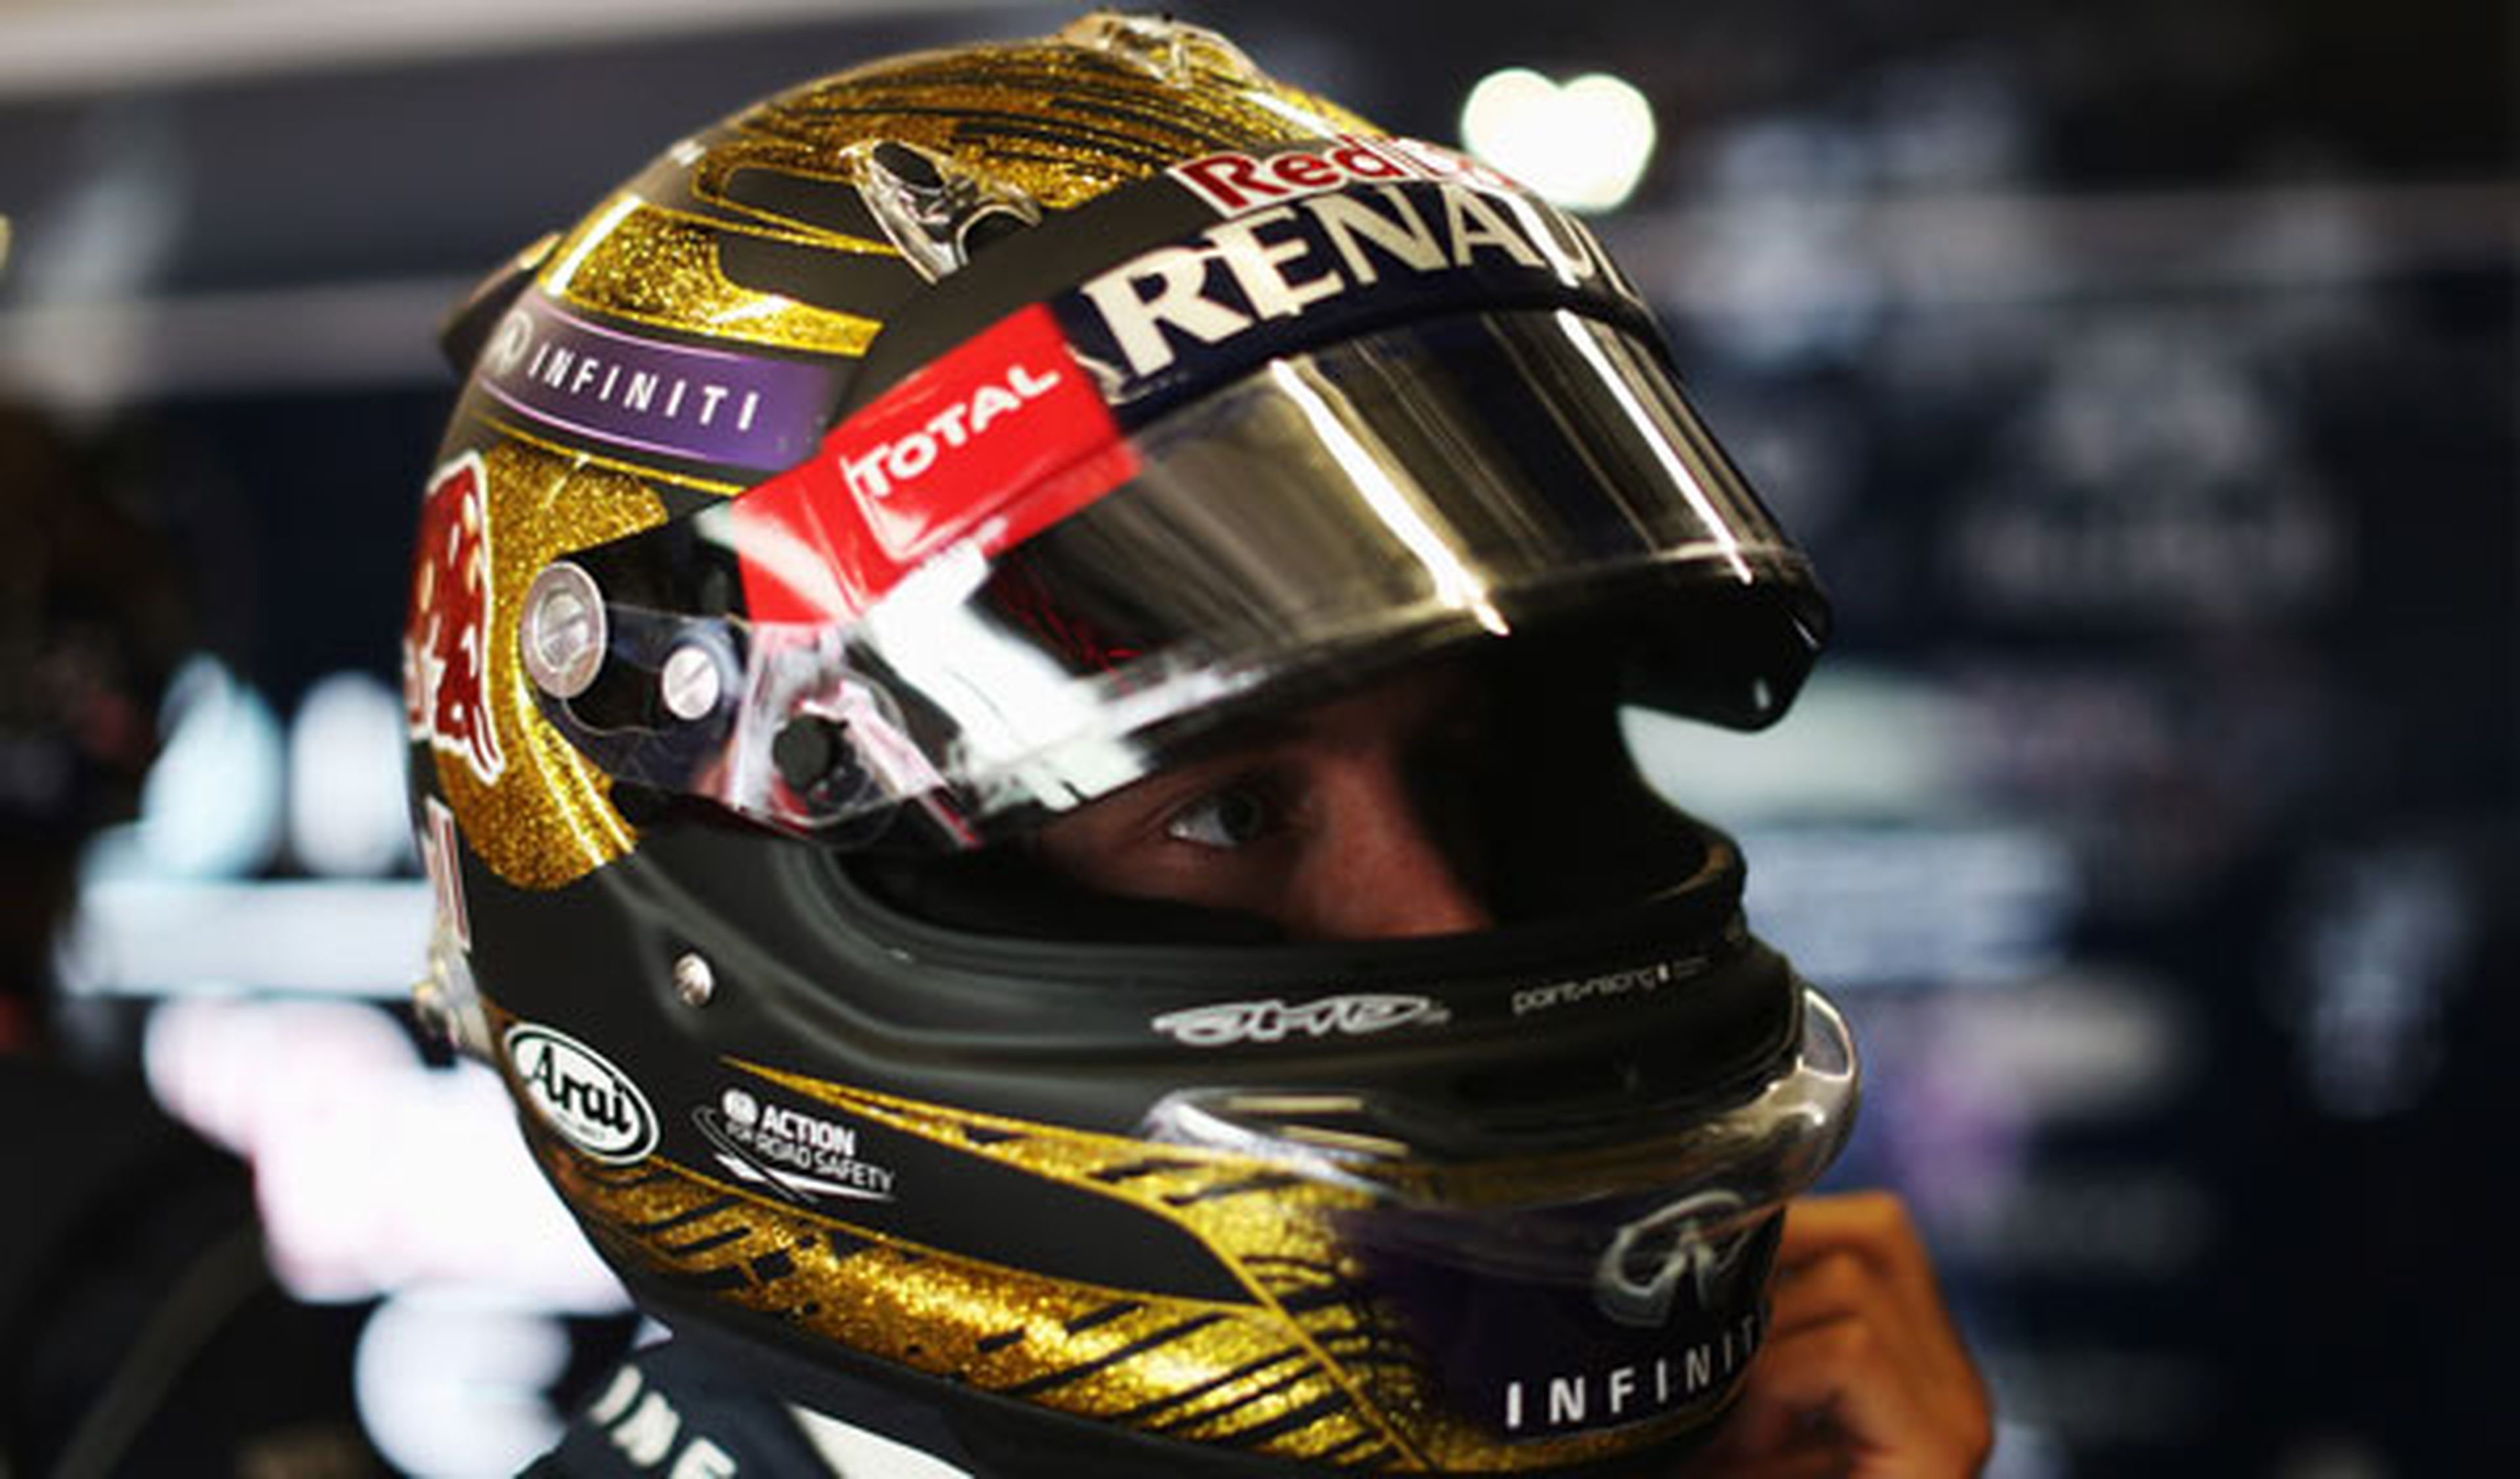 Subastan uno de los cascos de Vettel por 86.000 euros